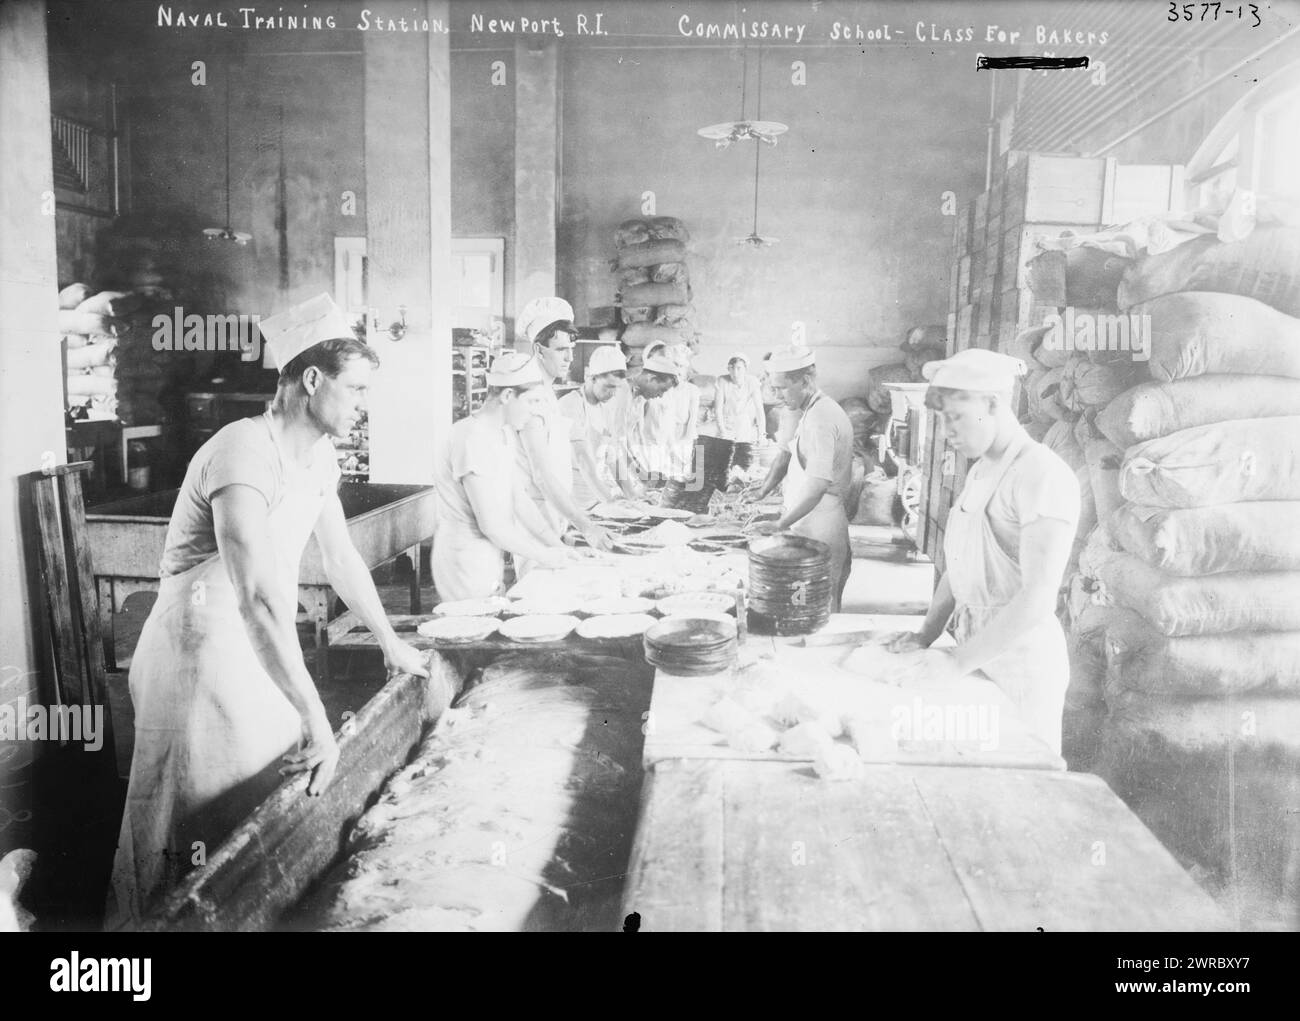 Stazione di addestramento navale, Newport, R.I., scuola commissaria - corso per panettieri, tra ca. 1910 e ca. 1915, Glass negative, 1 negativo: Glass Foto Stock